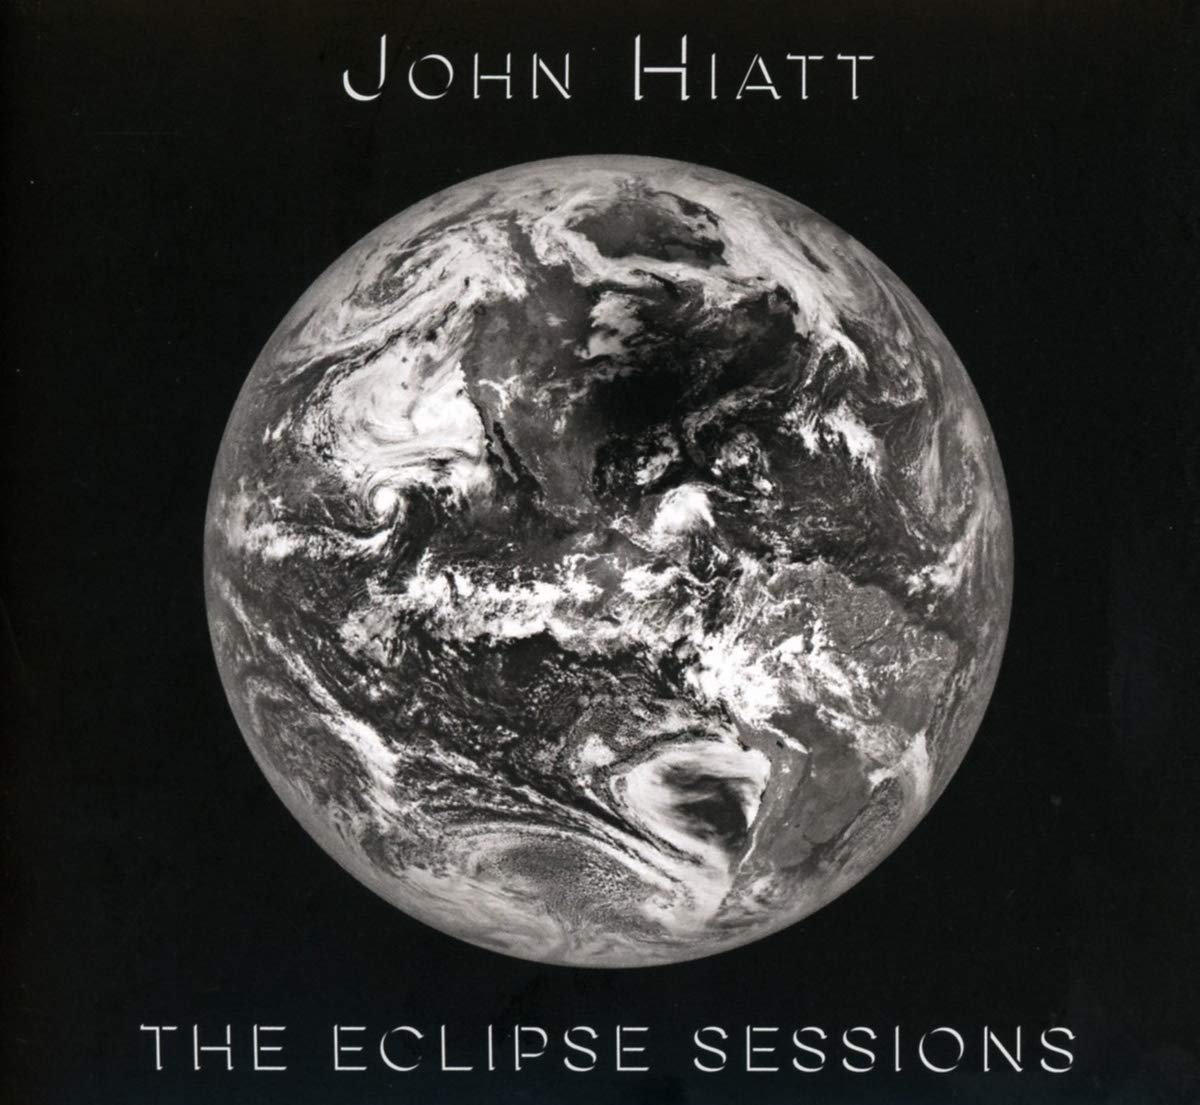 John Hiatt – The Eclipse Sessions (2018) [FLAC 24bit/44,1kHz]